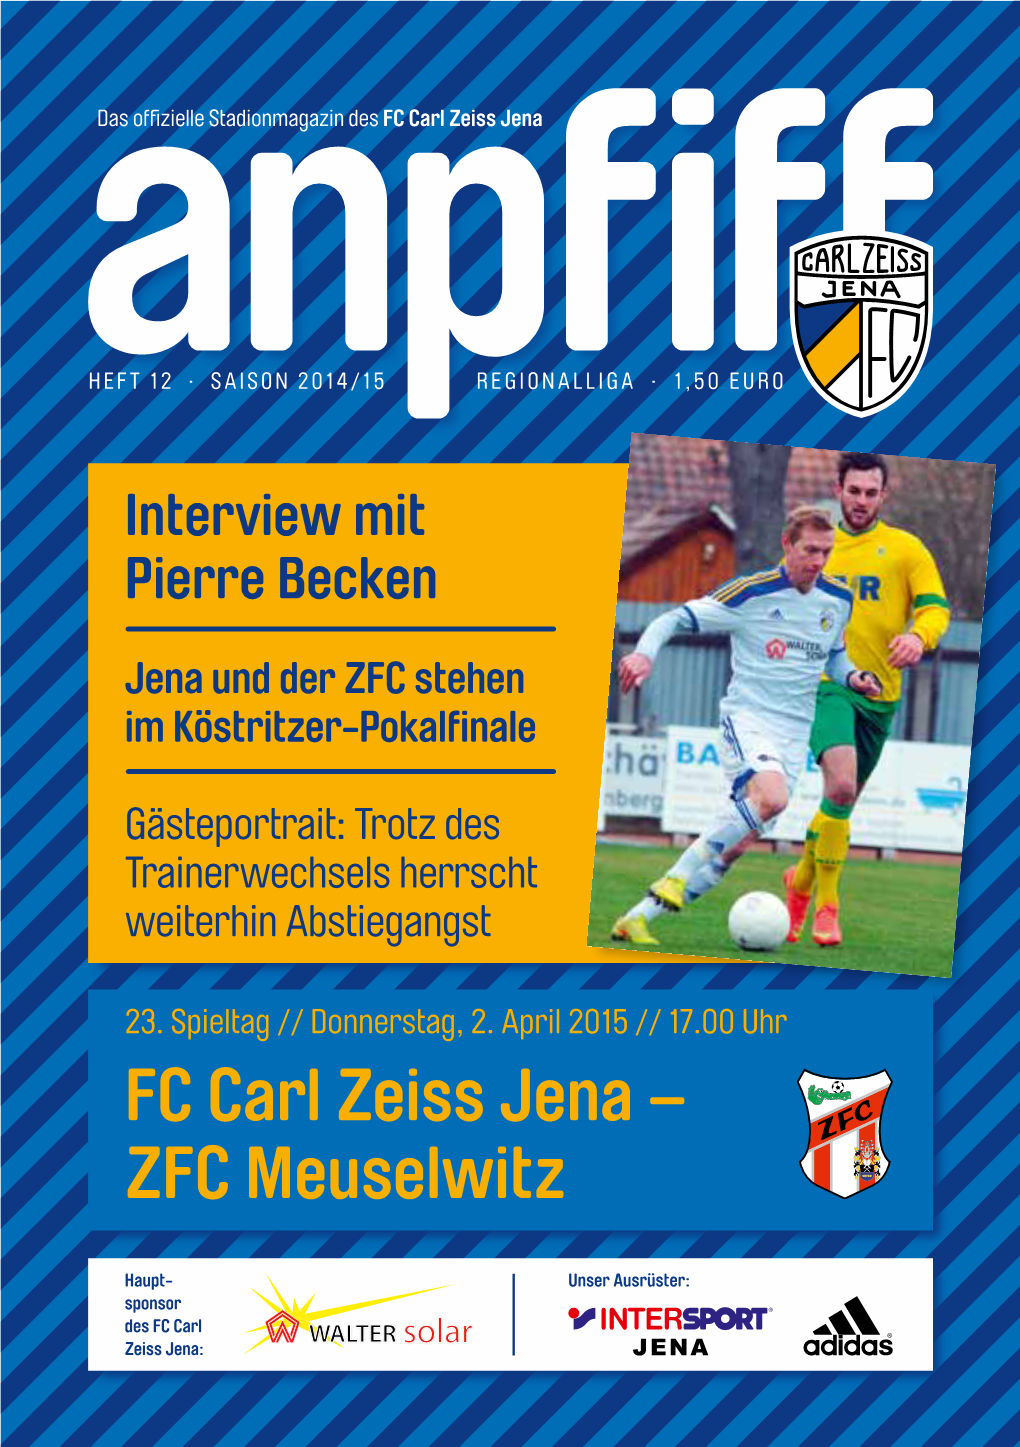 FC Carl Zeiss Jena – ZFC Meuselwitz